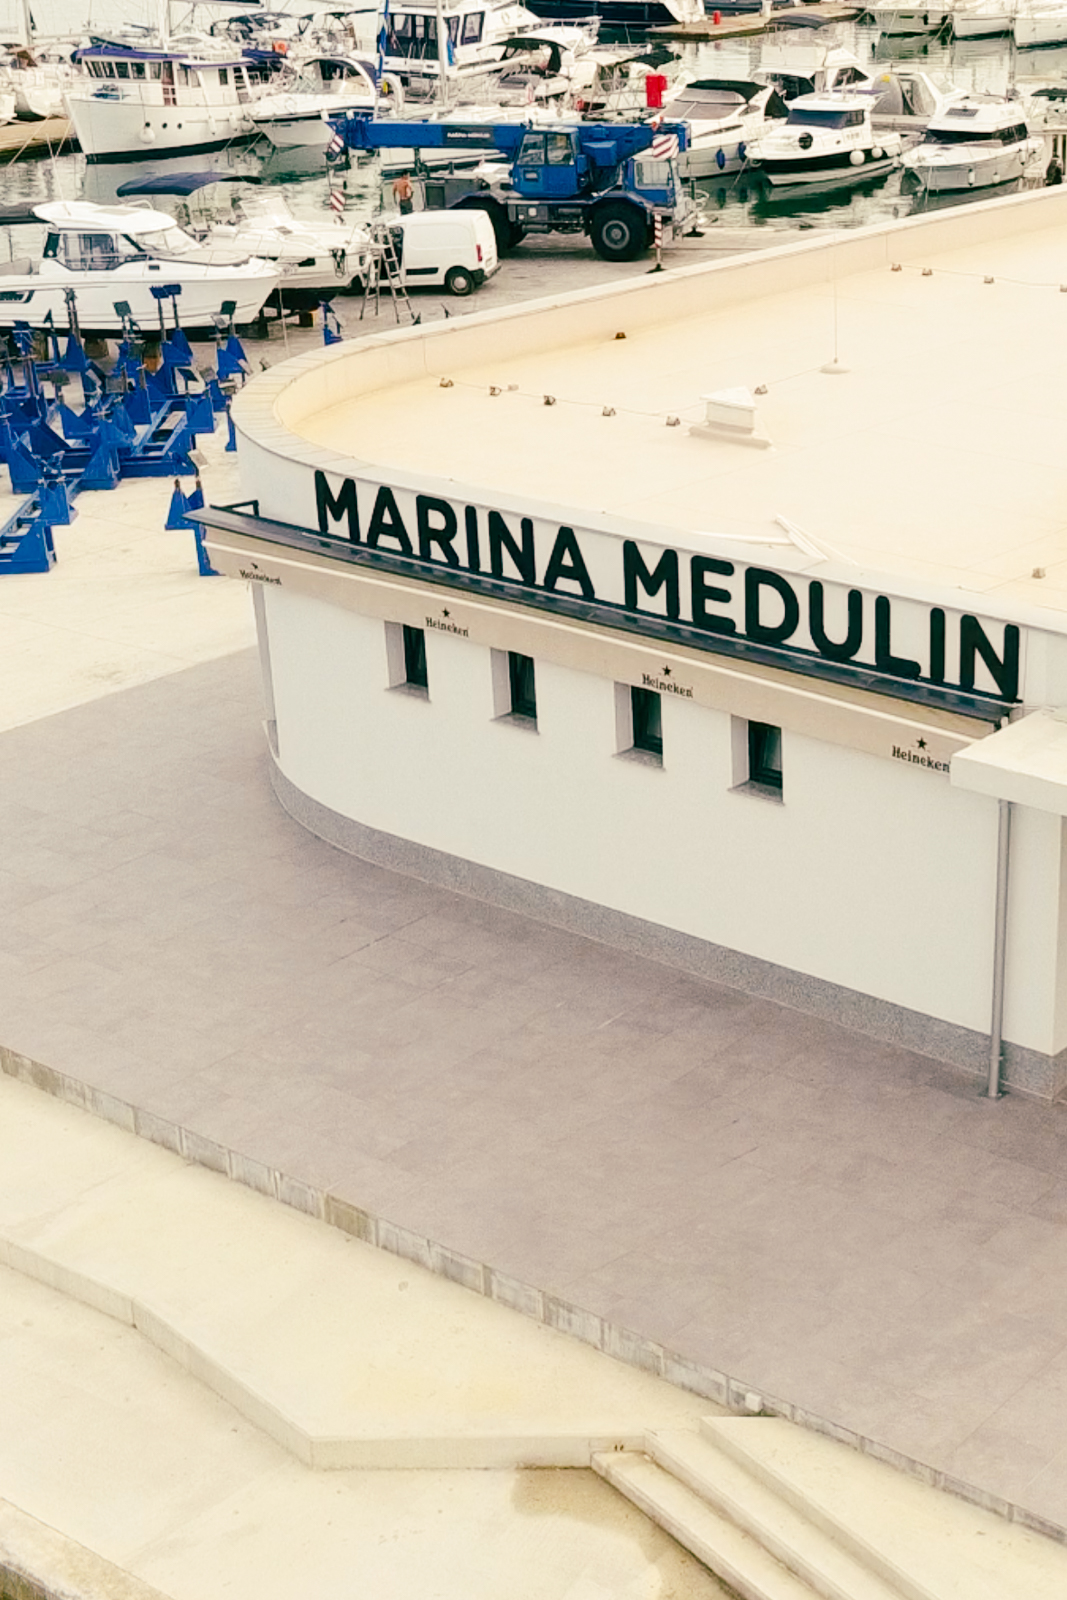 Marina Medulin Hafen Stuis Törns Ausgangspunkt Mitsegeln Kroatien